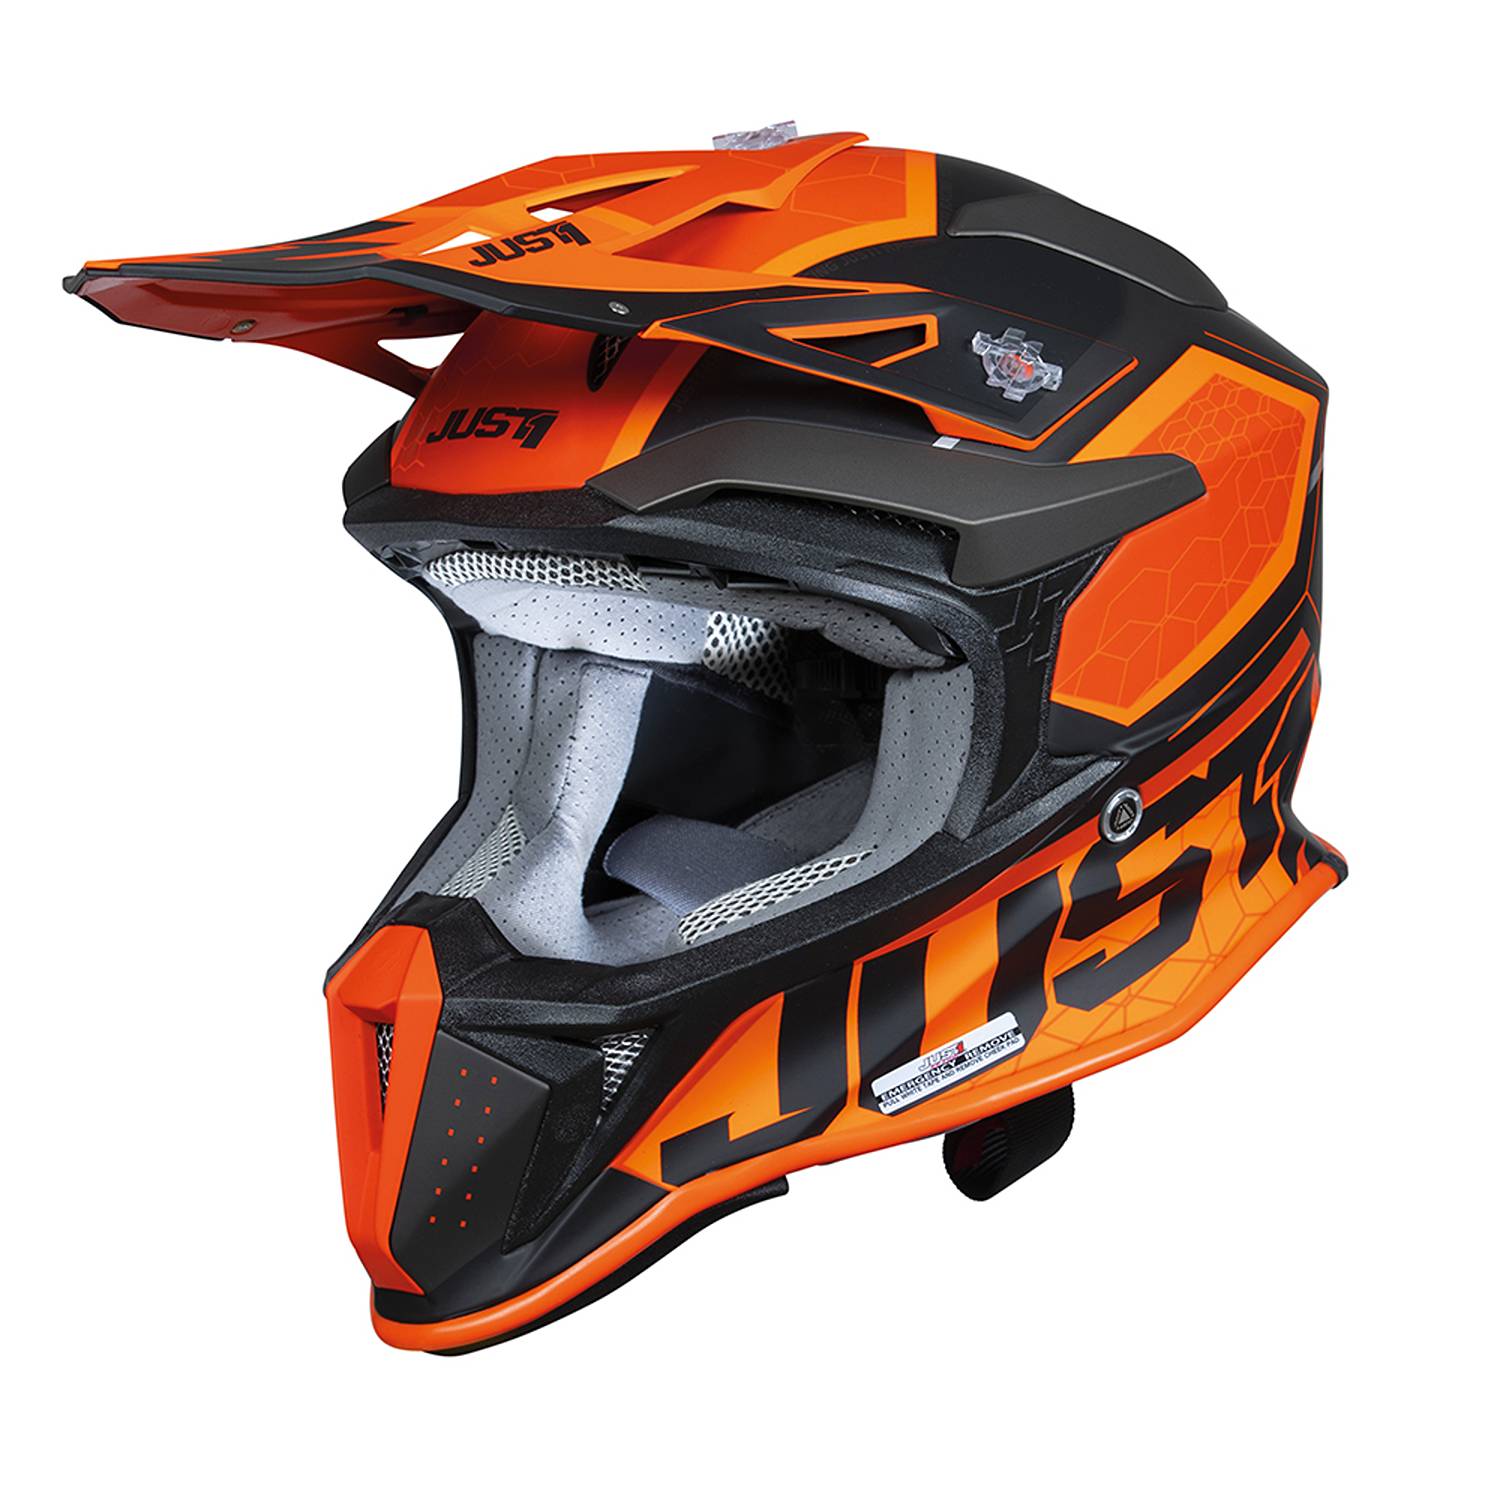 Image of Just1 J18-F Hexa Orange Black Matt Offroad Helmet Size XS EN